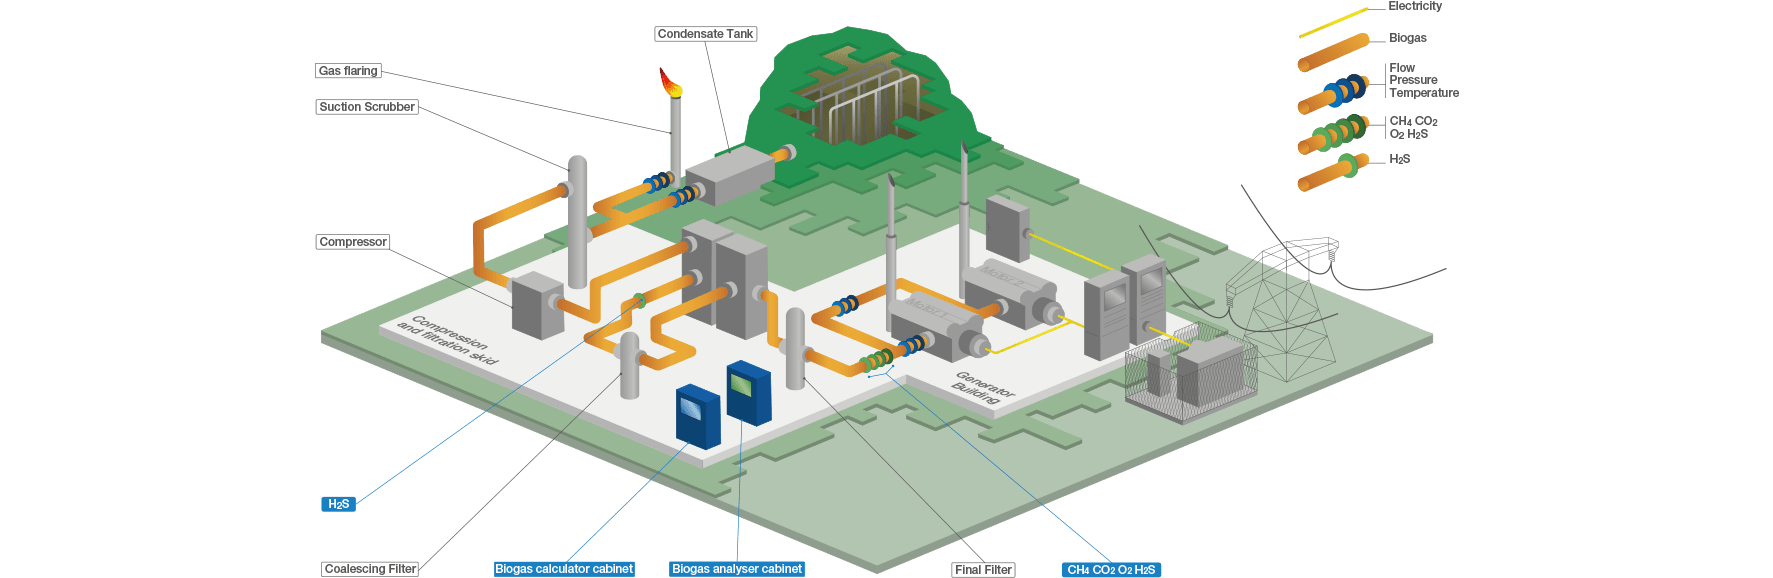 Welche Anwendungen gibt es für Biogasmessgeräte Schema